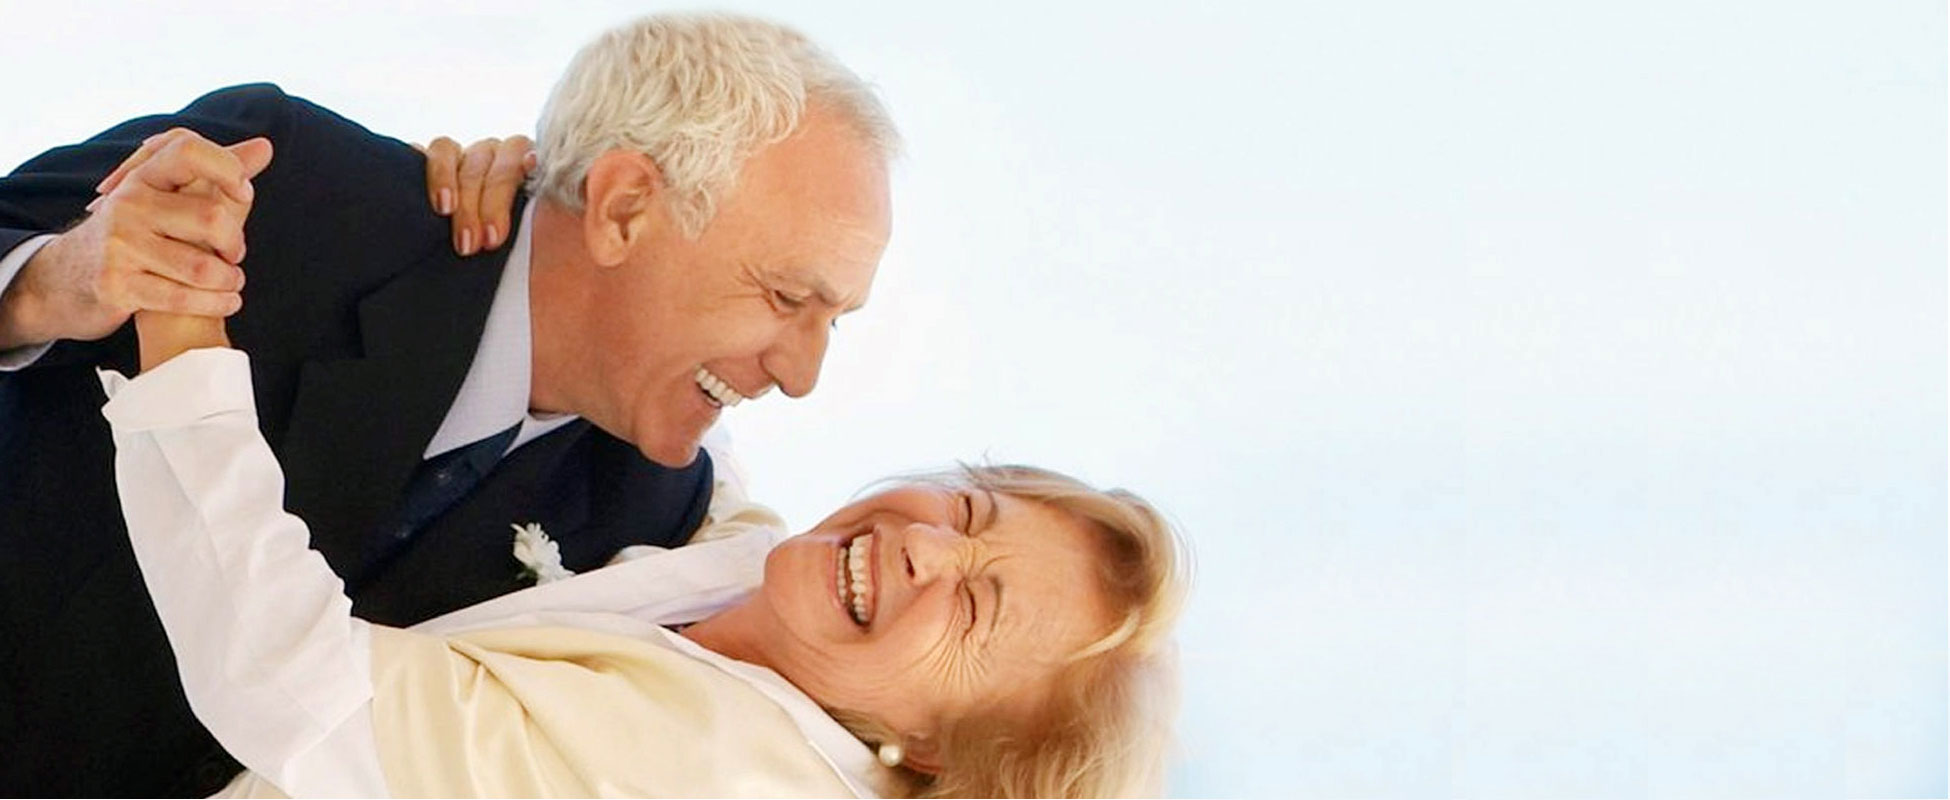 Dentures for Older Couples